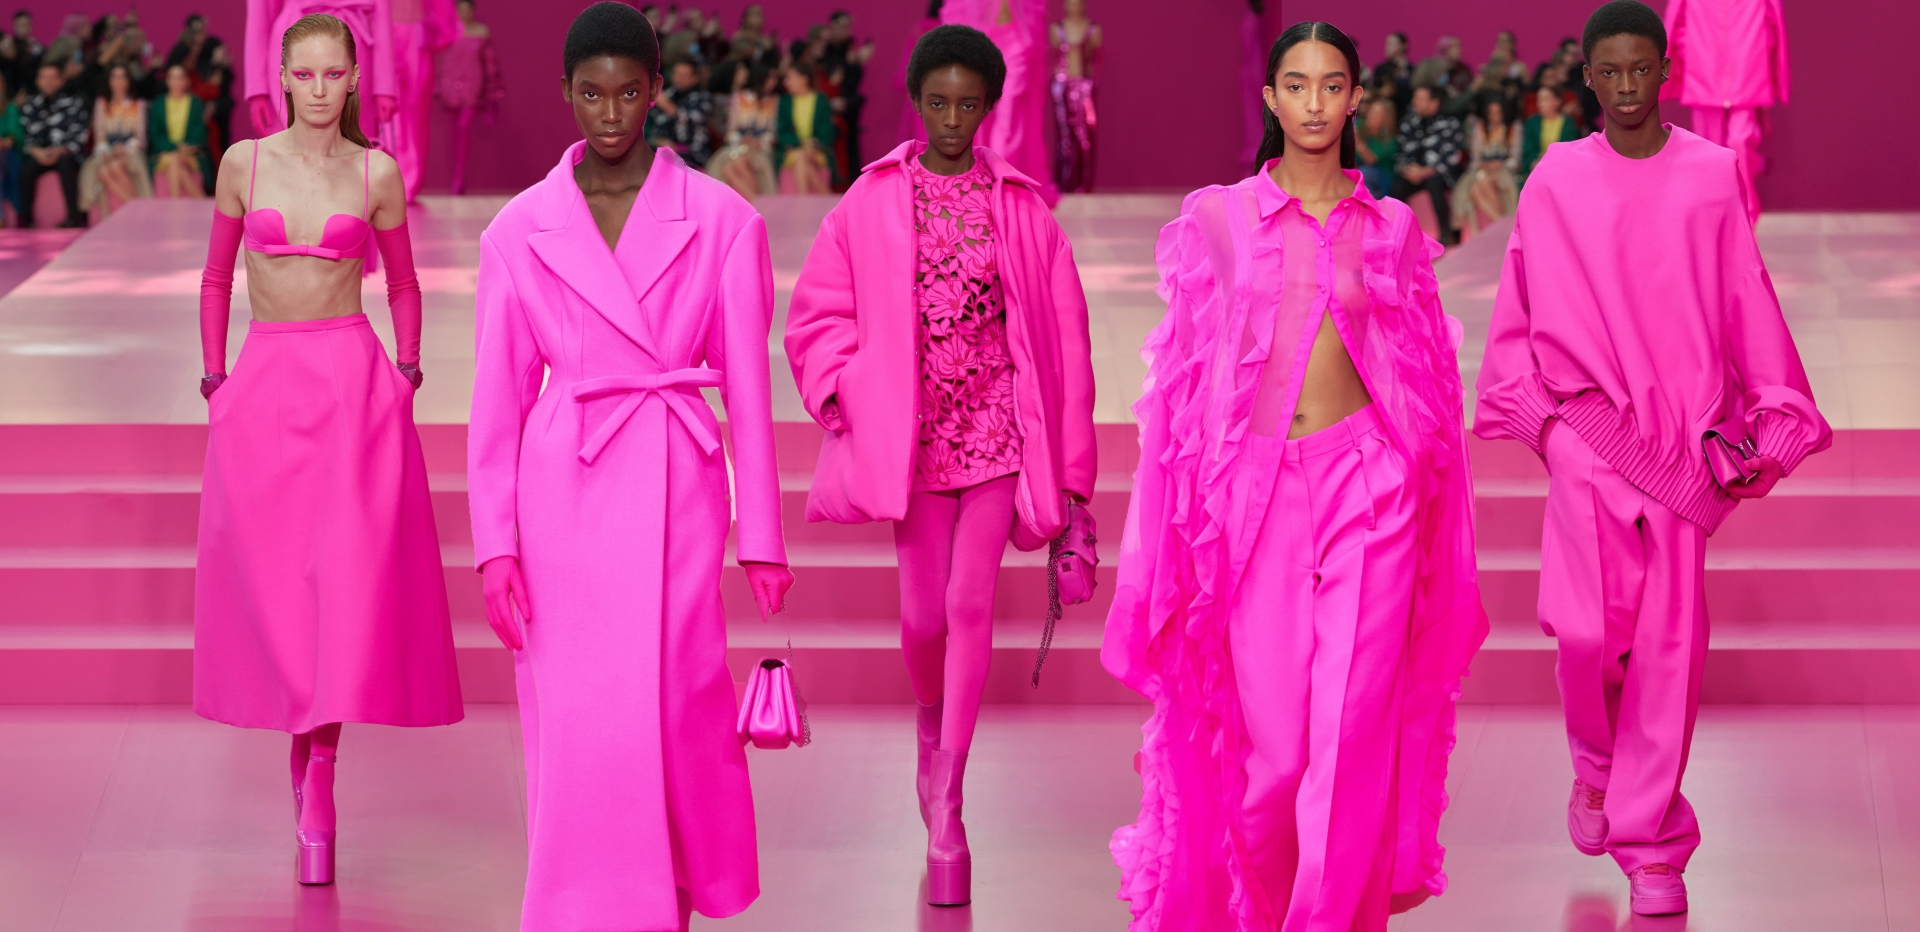 Valentino khiến giới một điệu lạc lối vào ngôi nhà màu hồng diệu kỳ, gây ấn tượng bởi lối khai thác đa chất liệu cũng như phong cách thiết kế, kỹ thuật tạo dáng đỉnh cao.